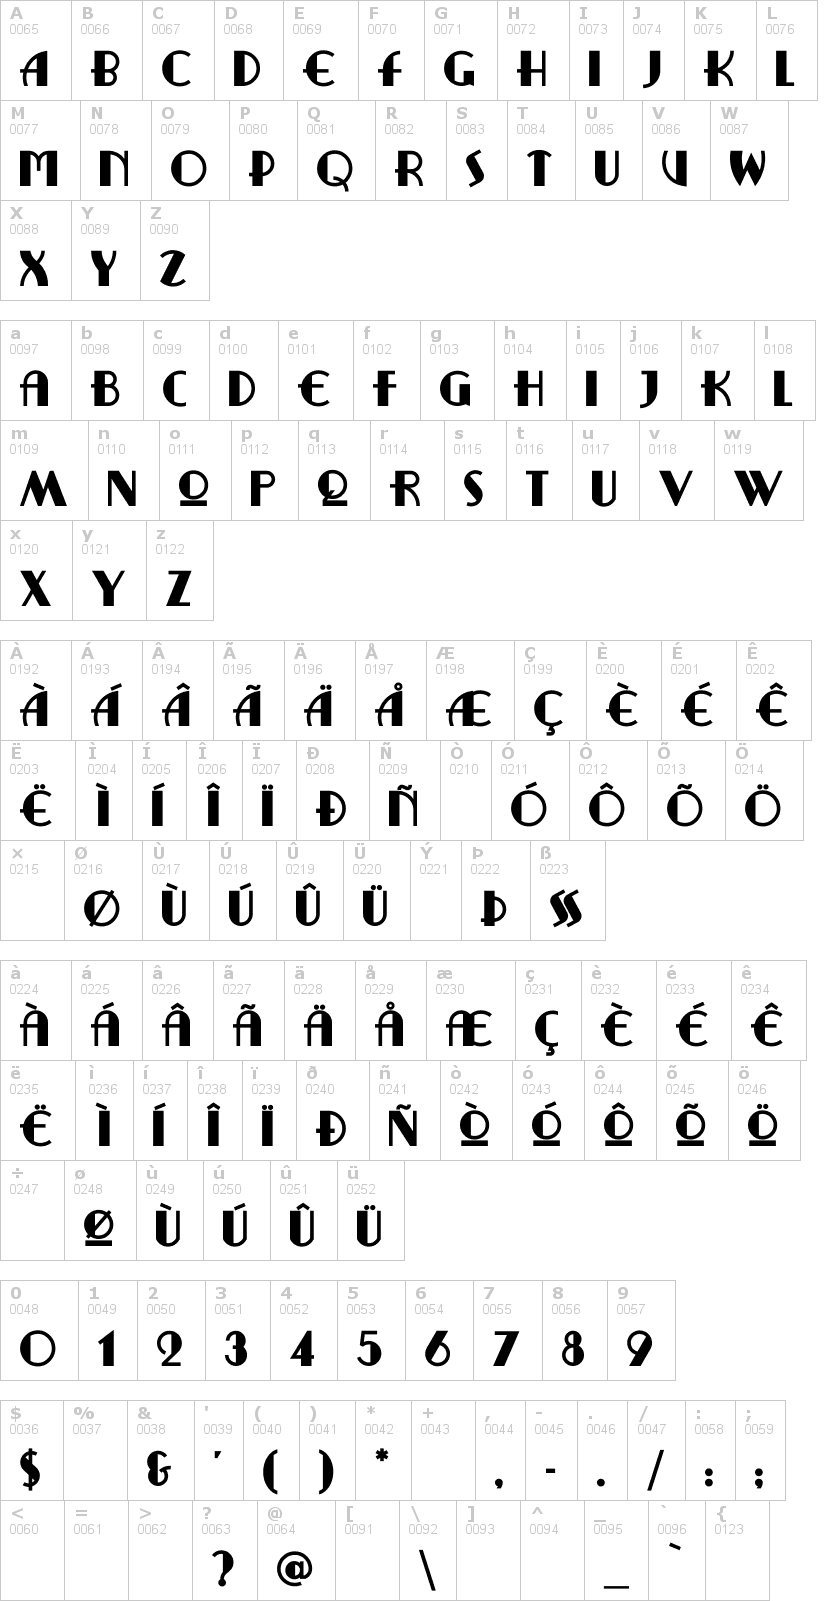 Lettere dell'alfabeto del font ritzy-remix con le quali è possibile realizzare adesivi prespaziati